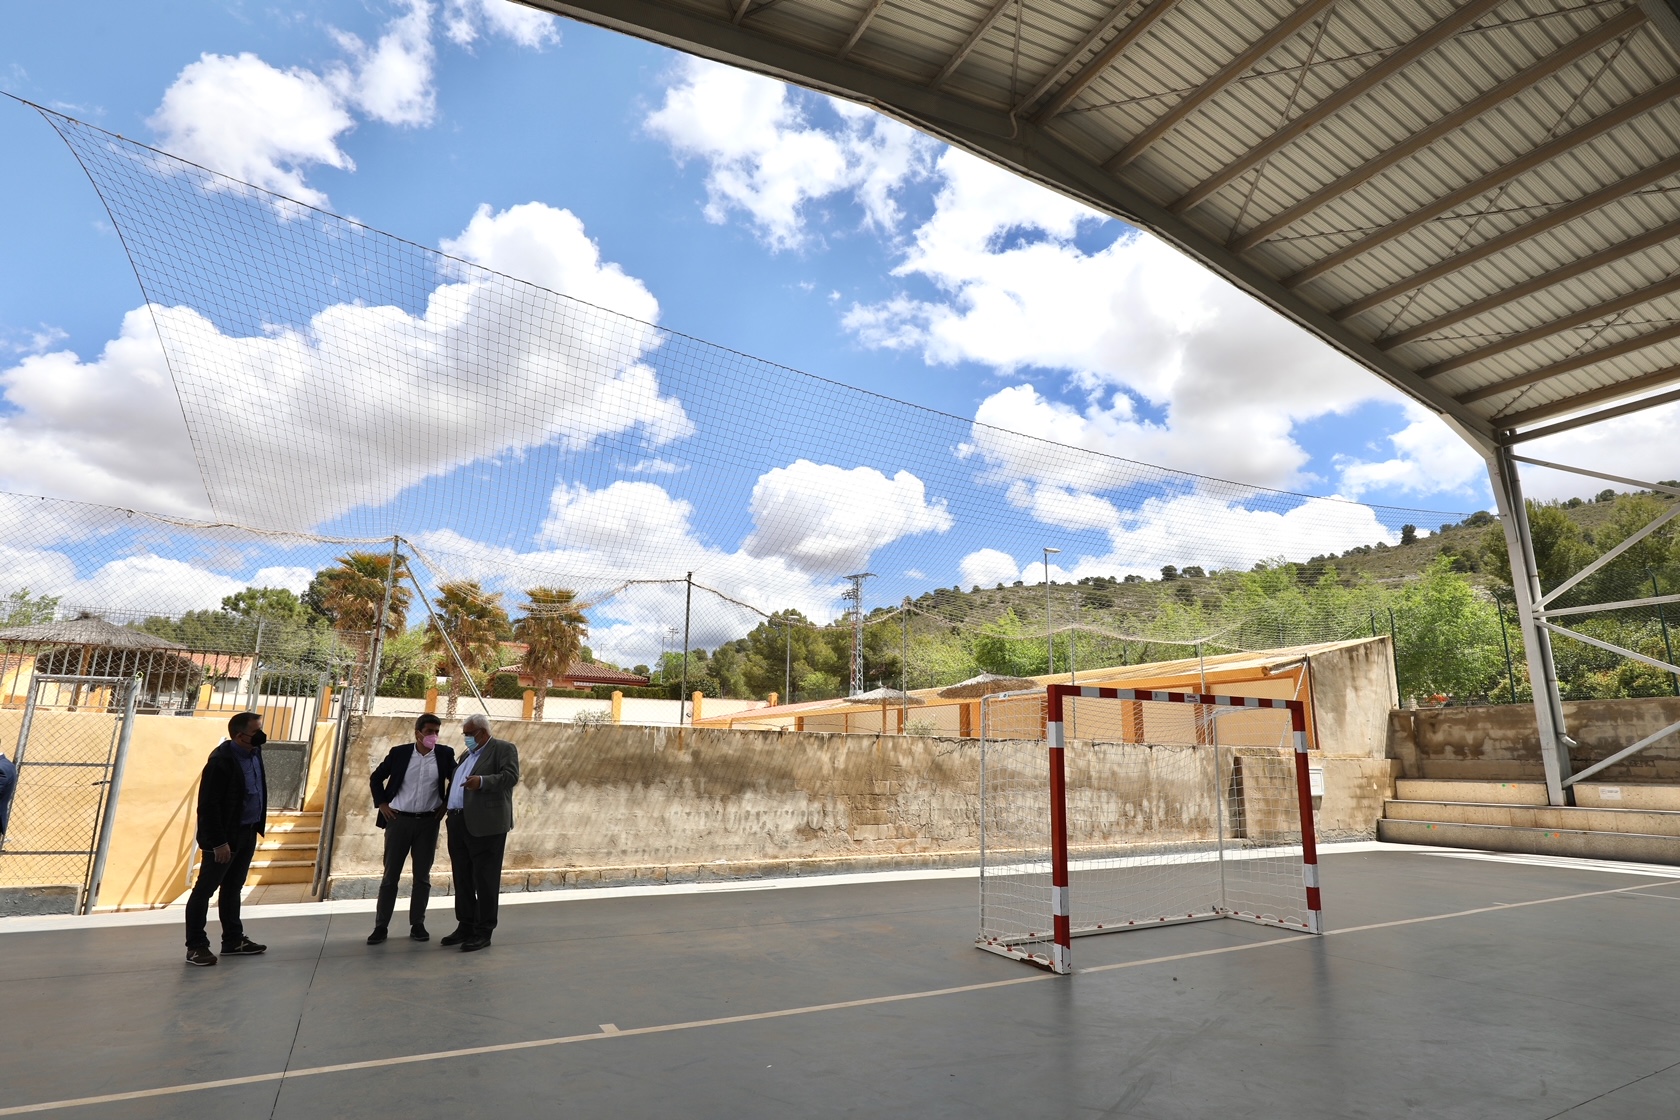 La Diputación invierte en Cañada cerca de un millón en ayudas sociales, deportivas, culturales e hídricas